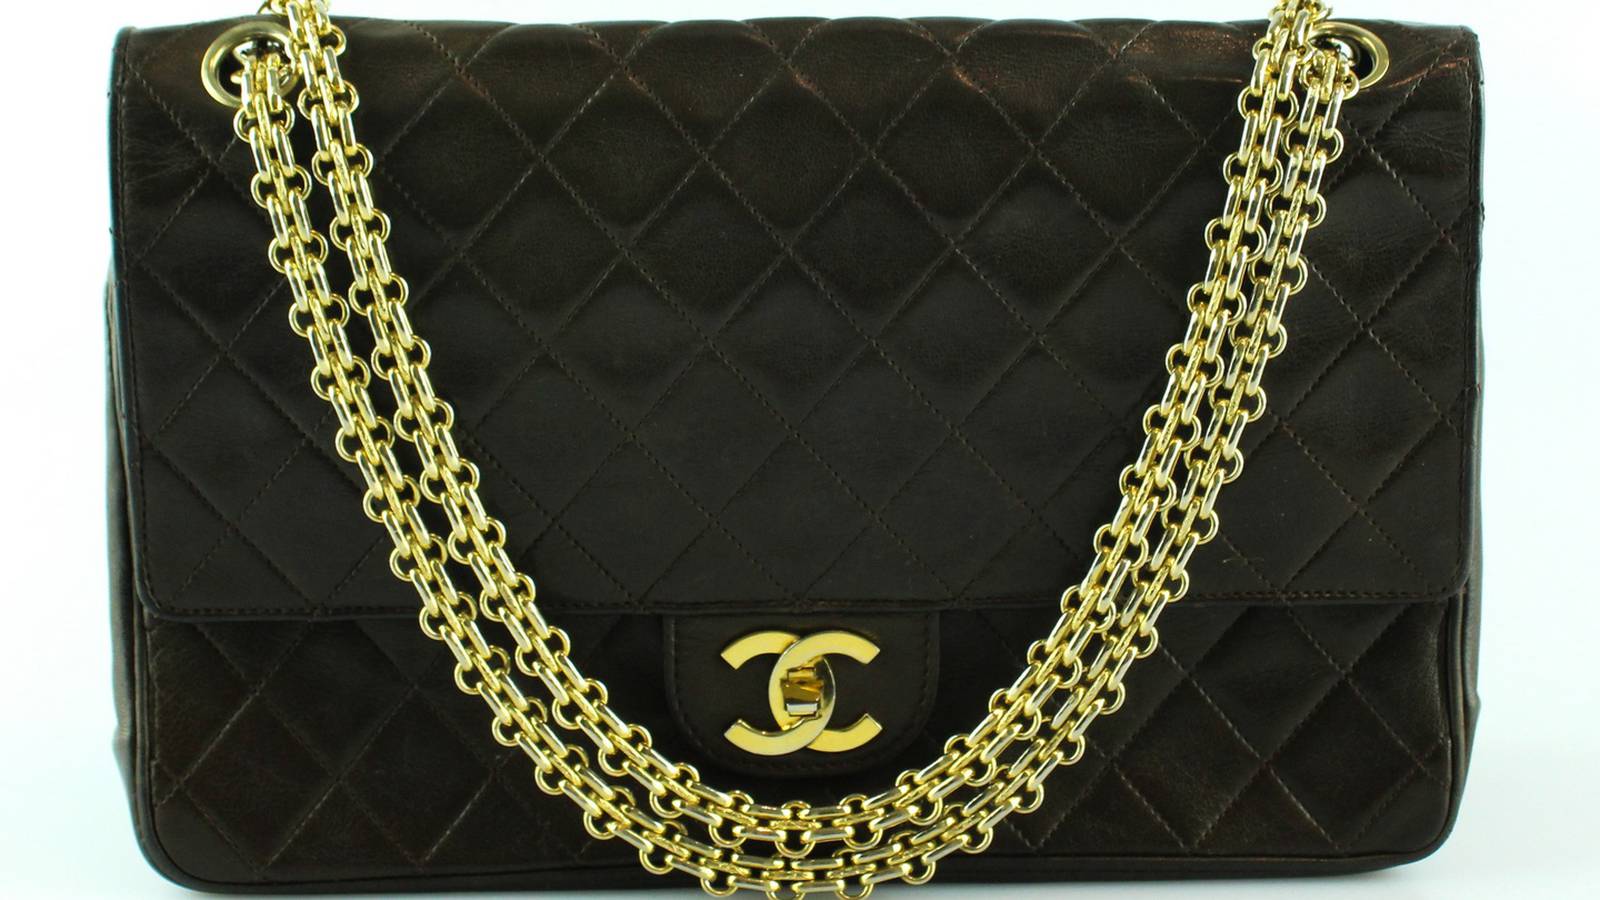 Beautiful Coco Chanel purse handbag